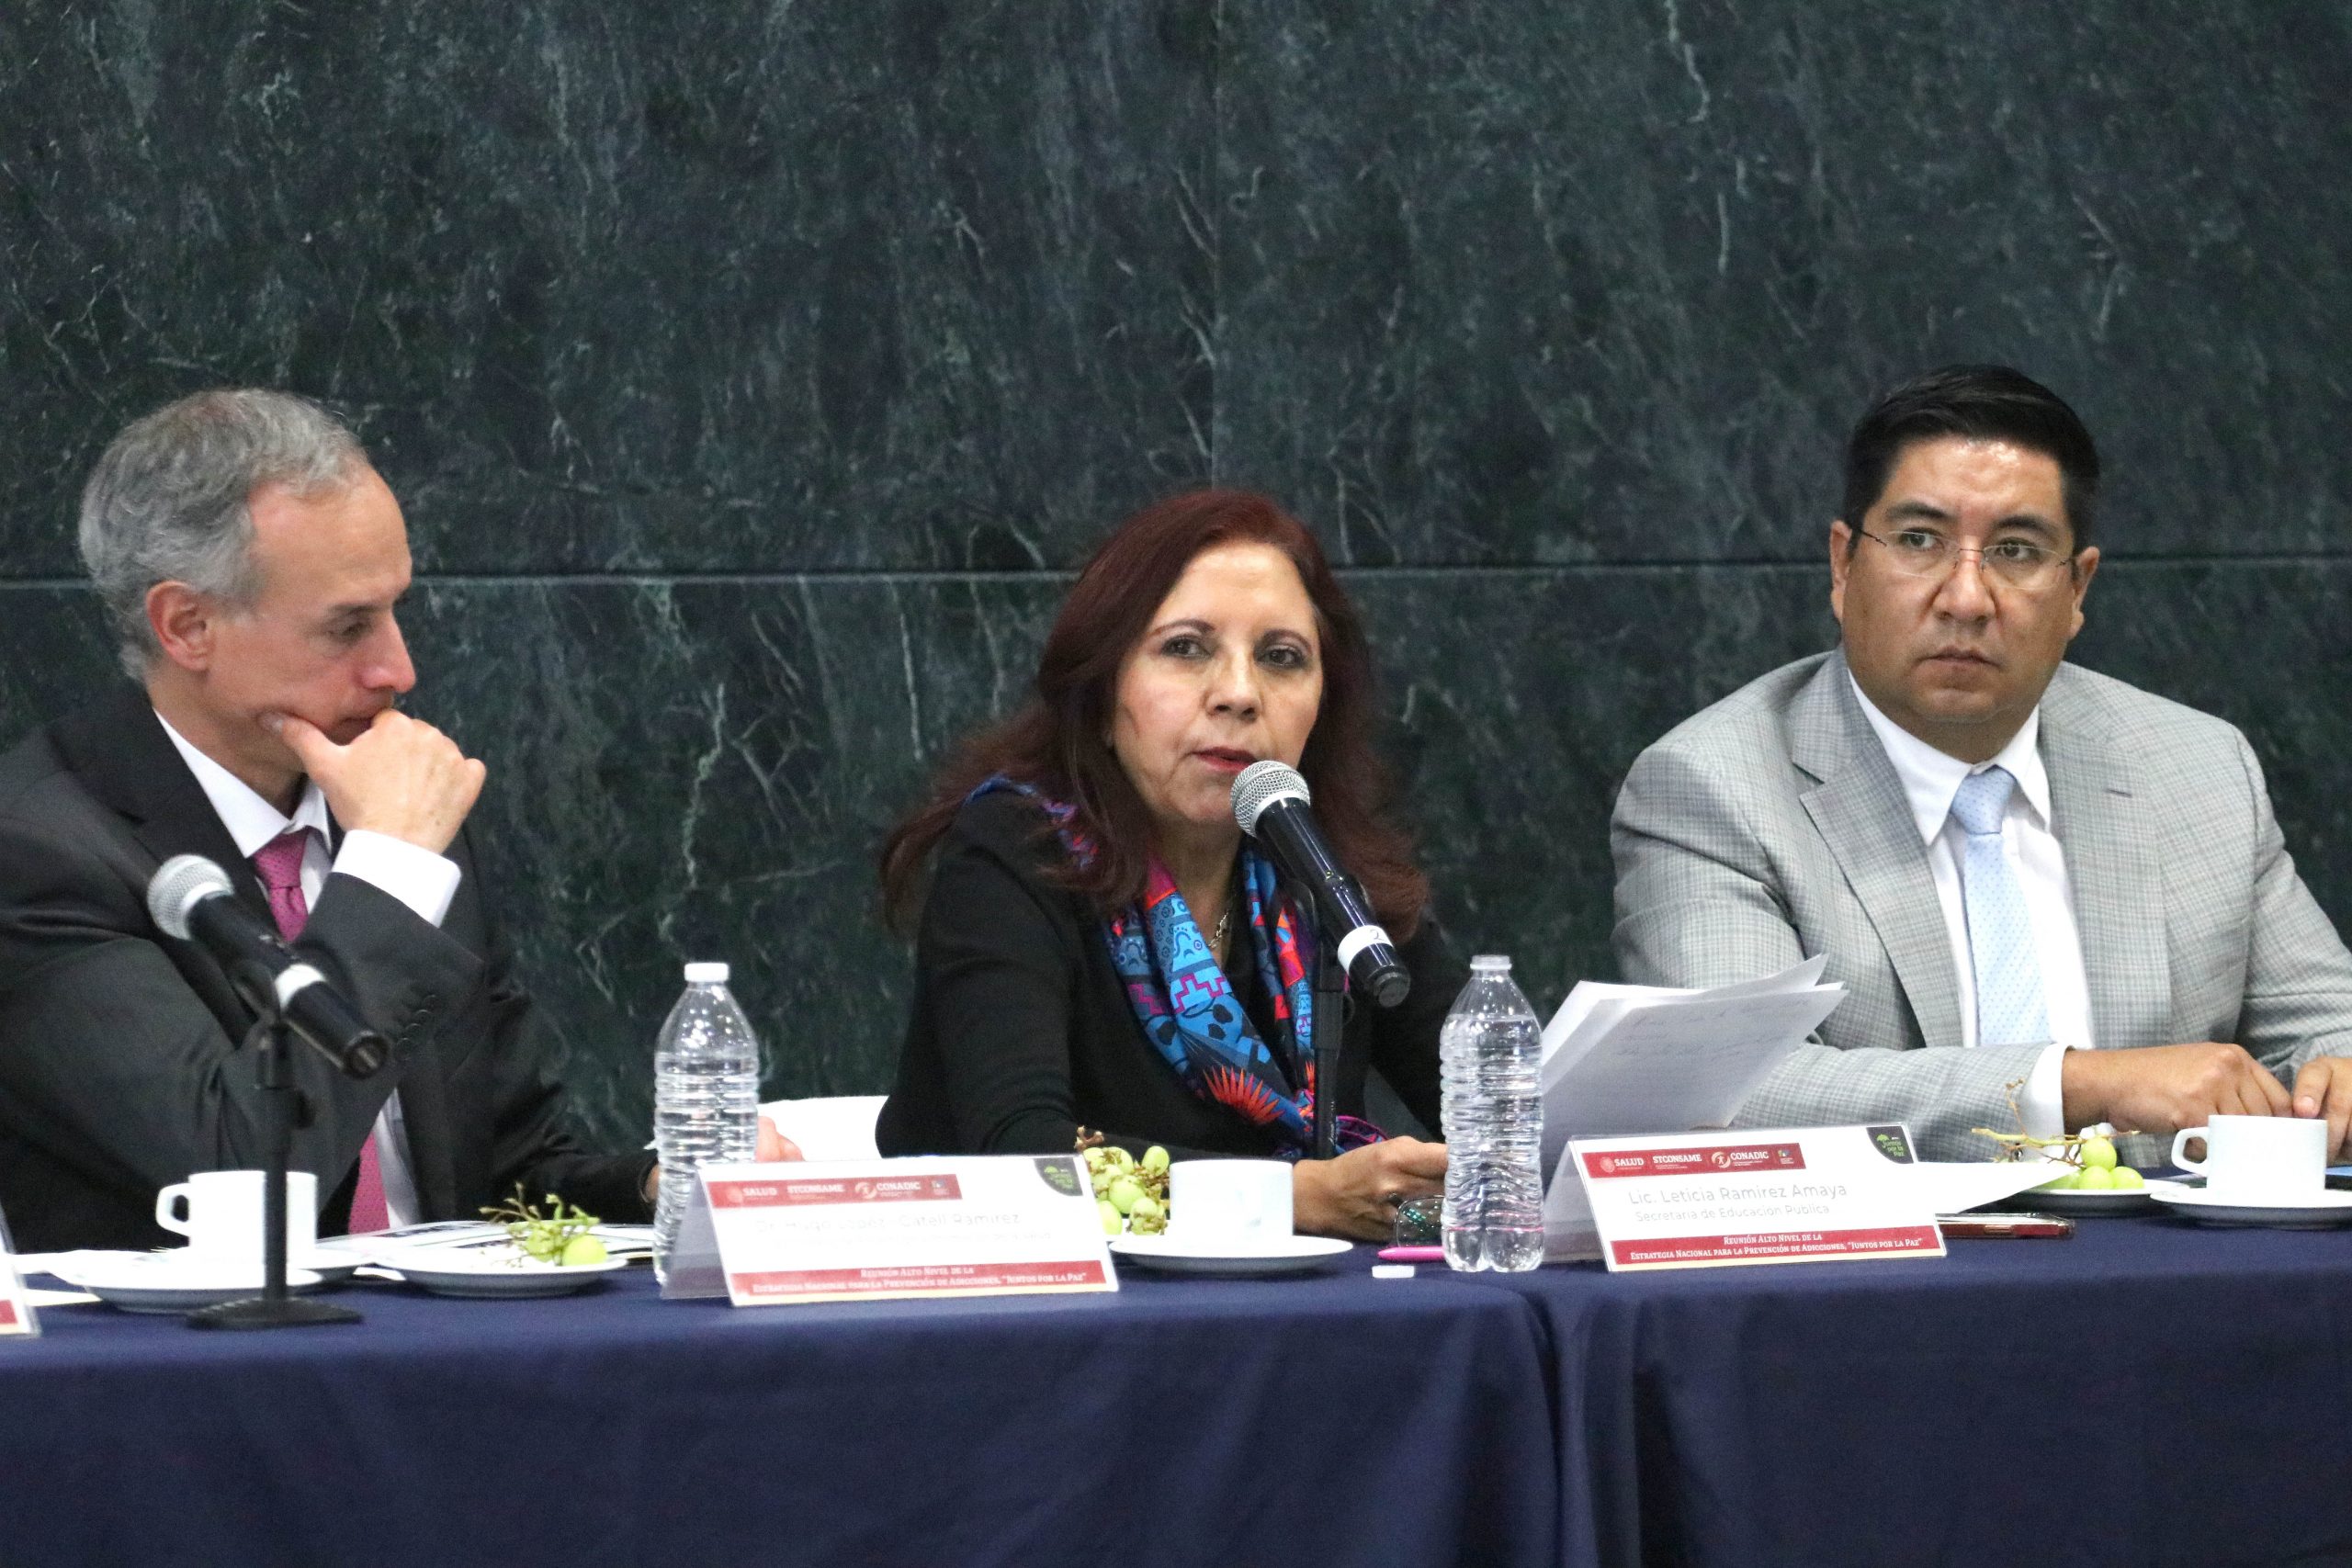 Gobierno de México consolida Estrategia Nacional para la Prevención de Adicciones